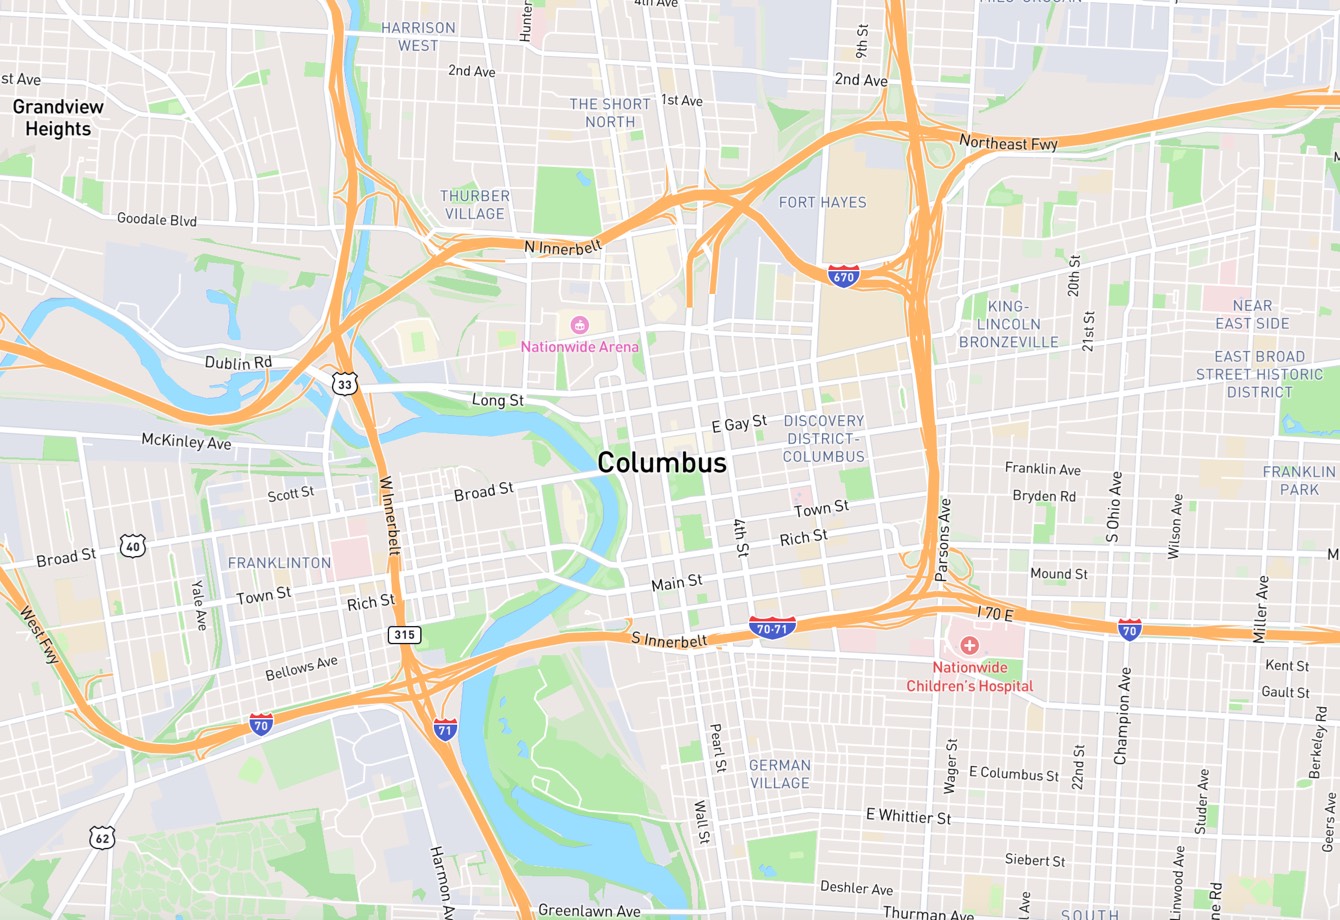 A map of Columbus, Ohio